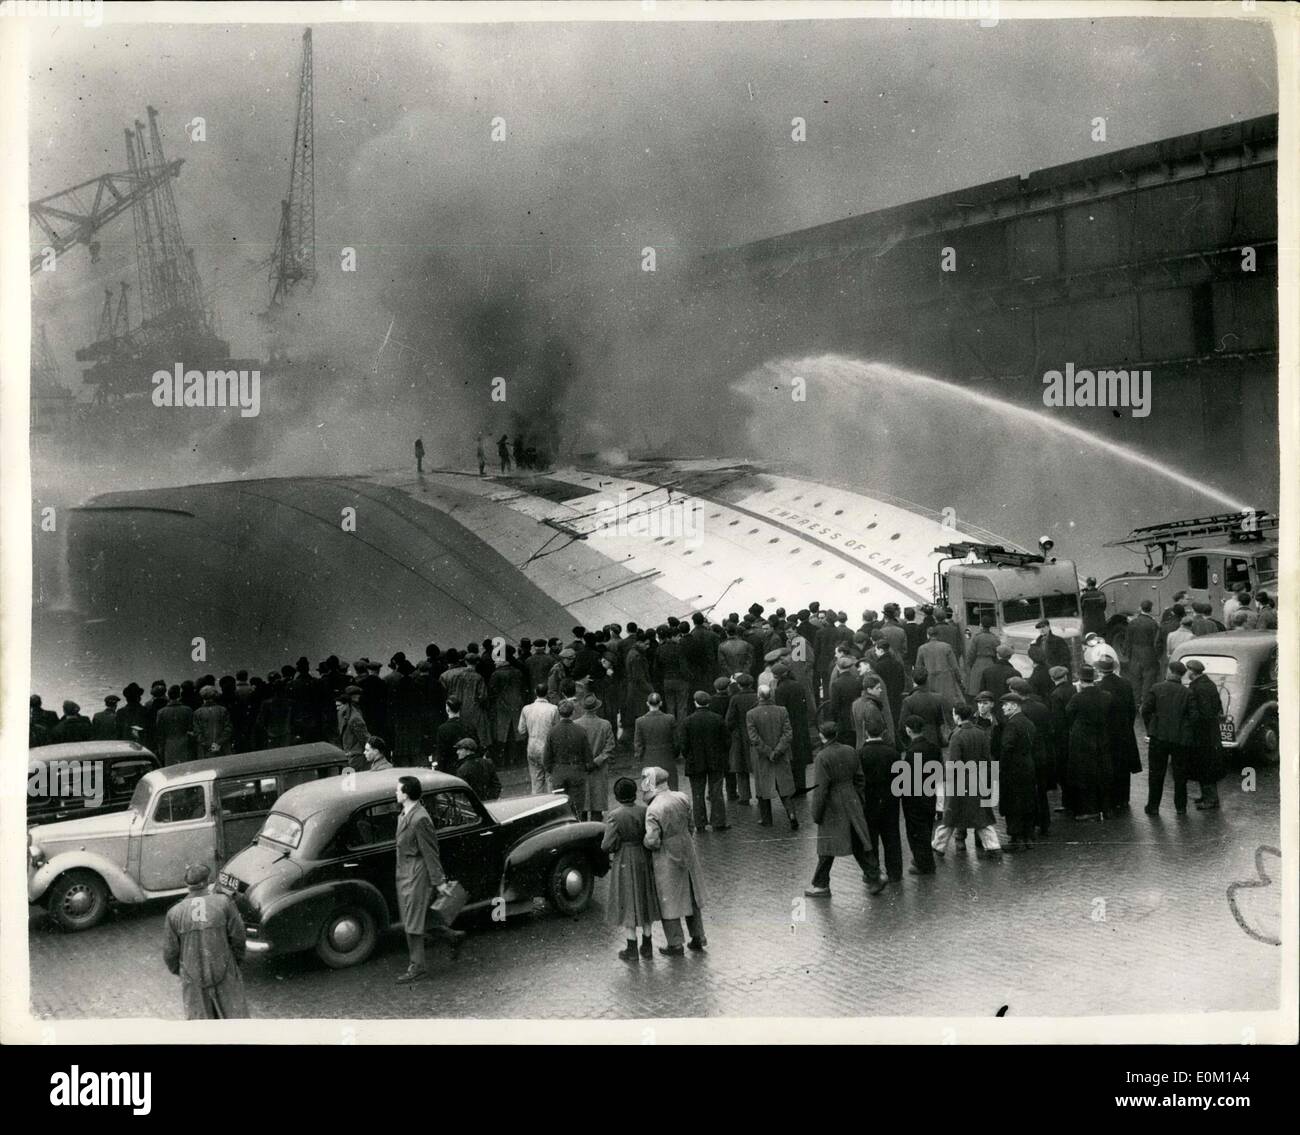 26 janvier 1953 - a chaviré Empress of Canada brûle encore : Photo montre : la foule sur le quai regarder pompiers joue toujours leurs flexibles sur l'Empress of Canada chaviré à Gladstone Dock, Liverpool. Banque D'Images